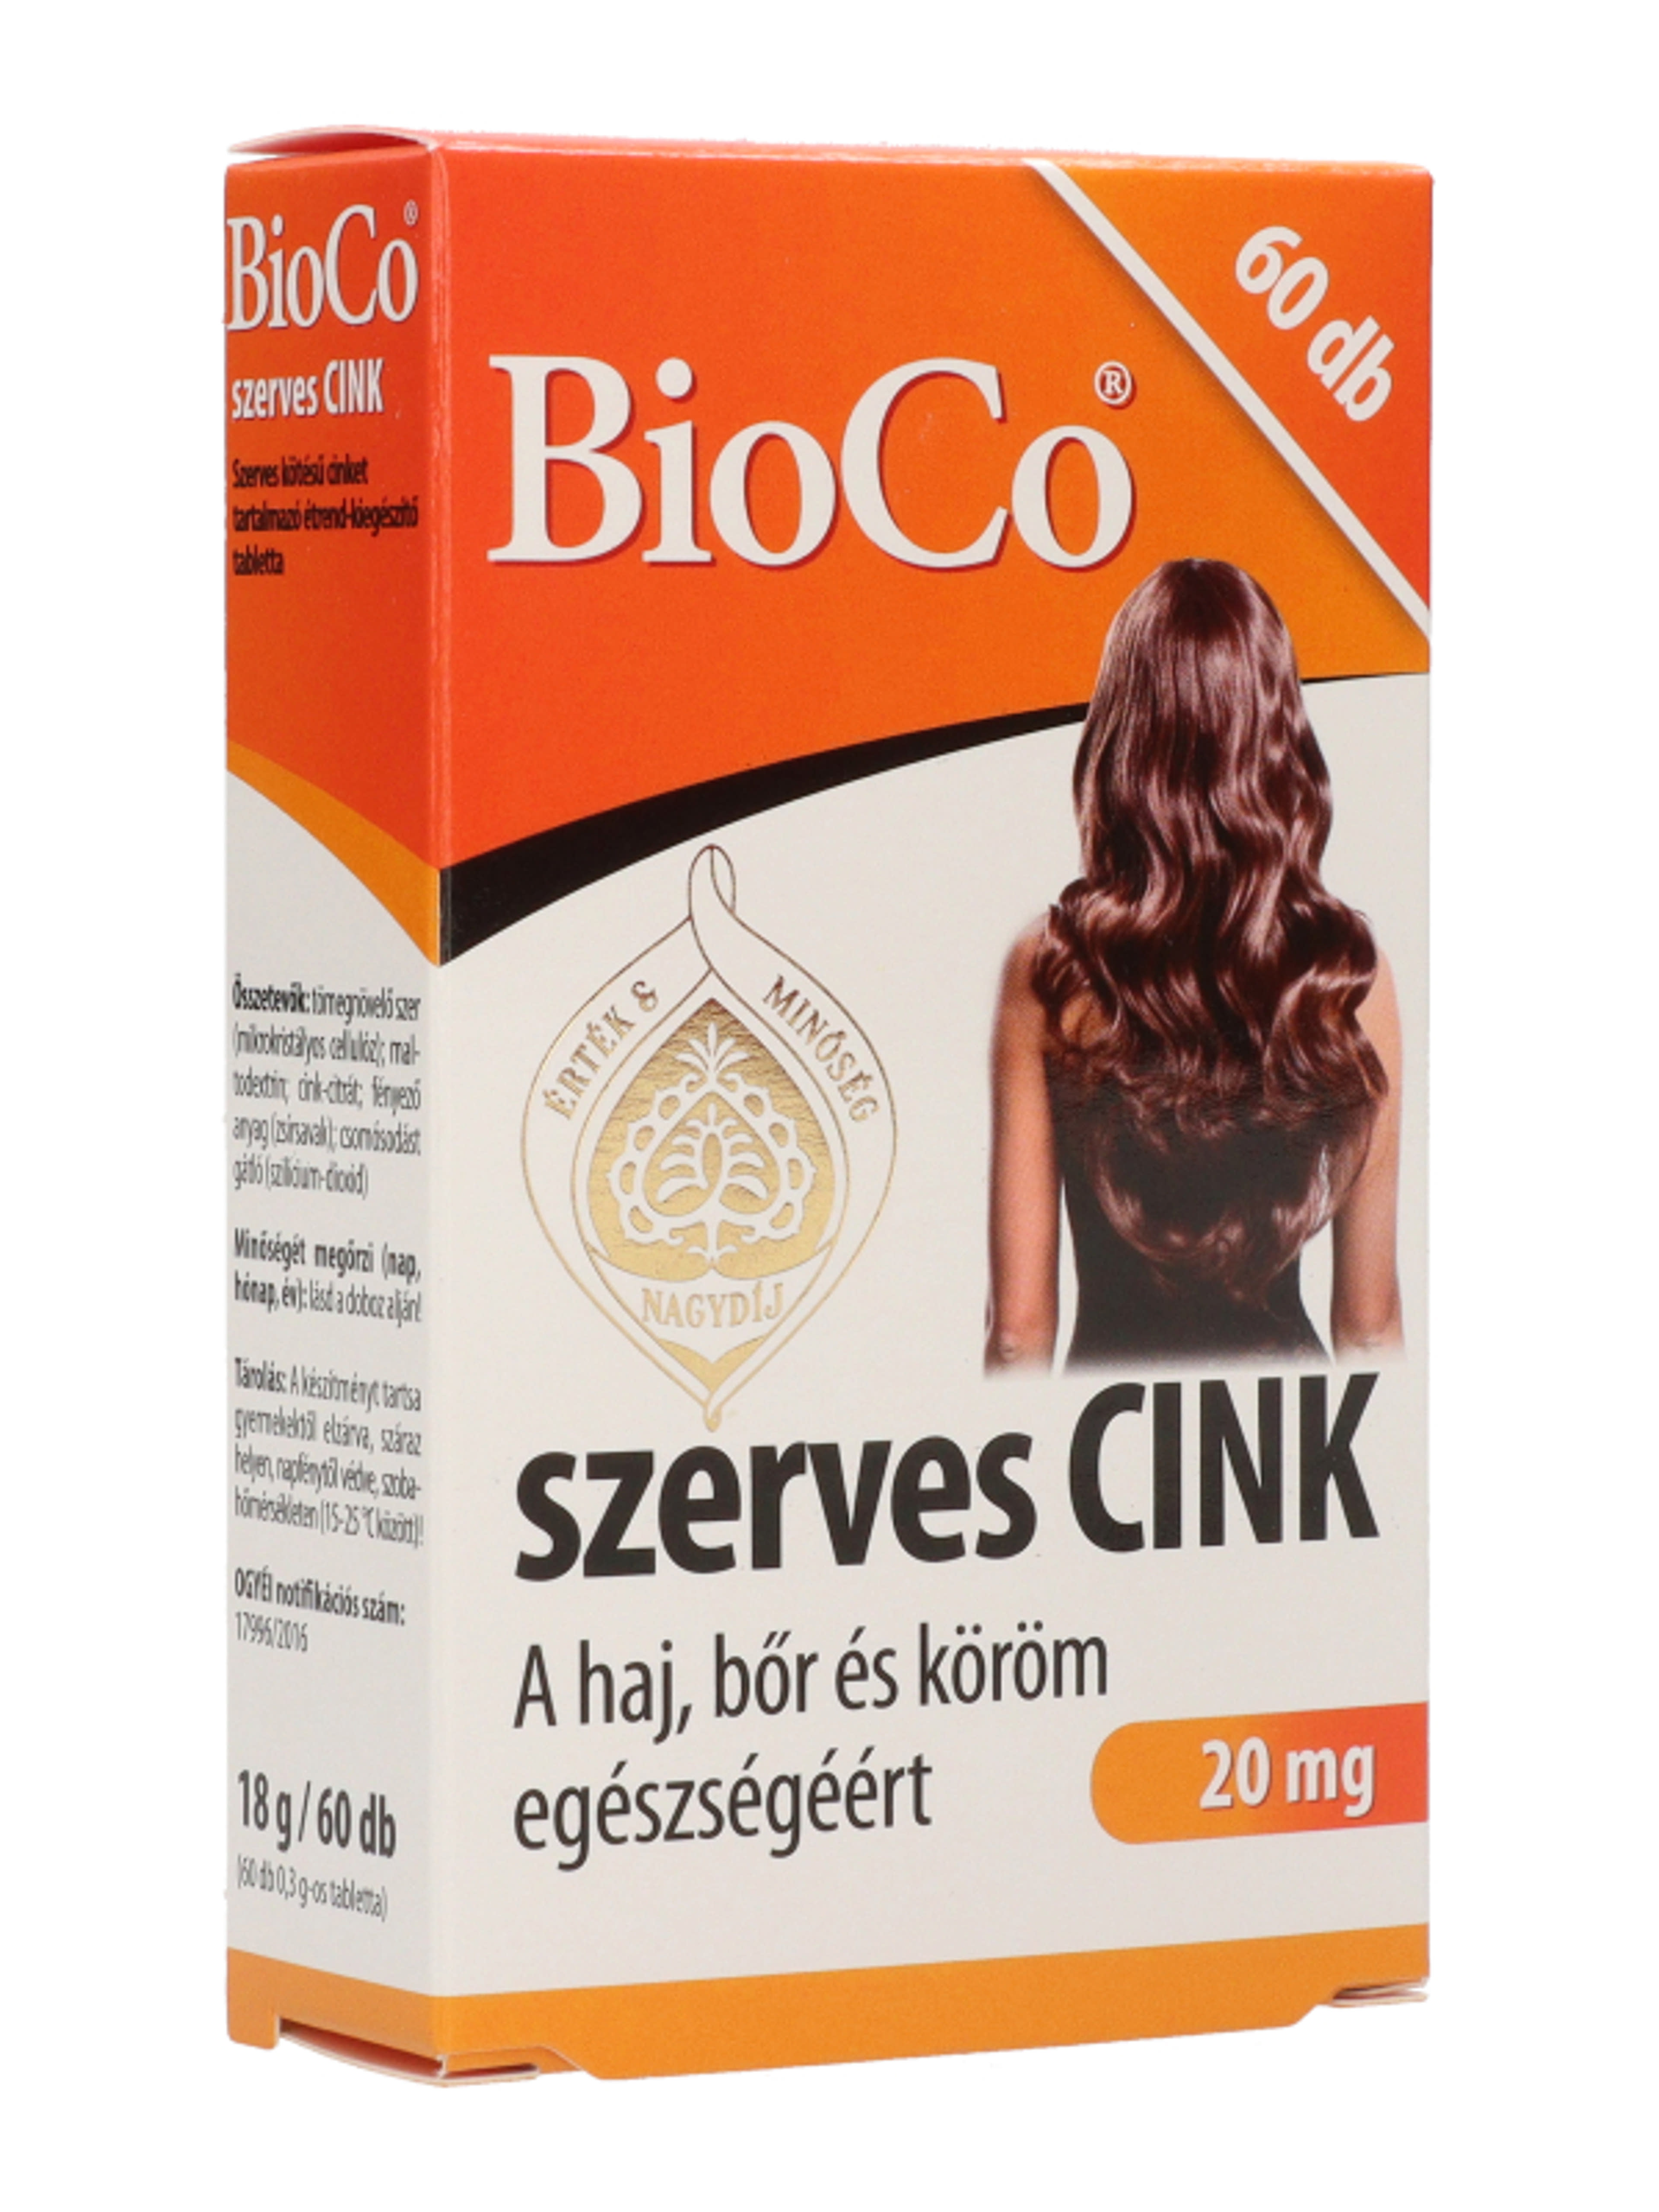 Bioco szerves cink tabletta - 60 db-7